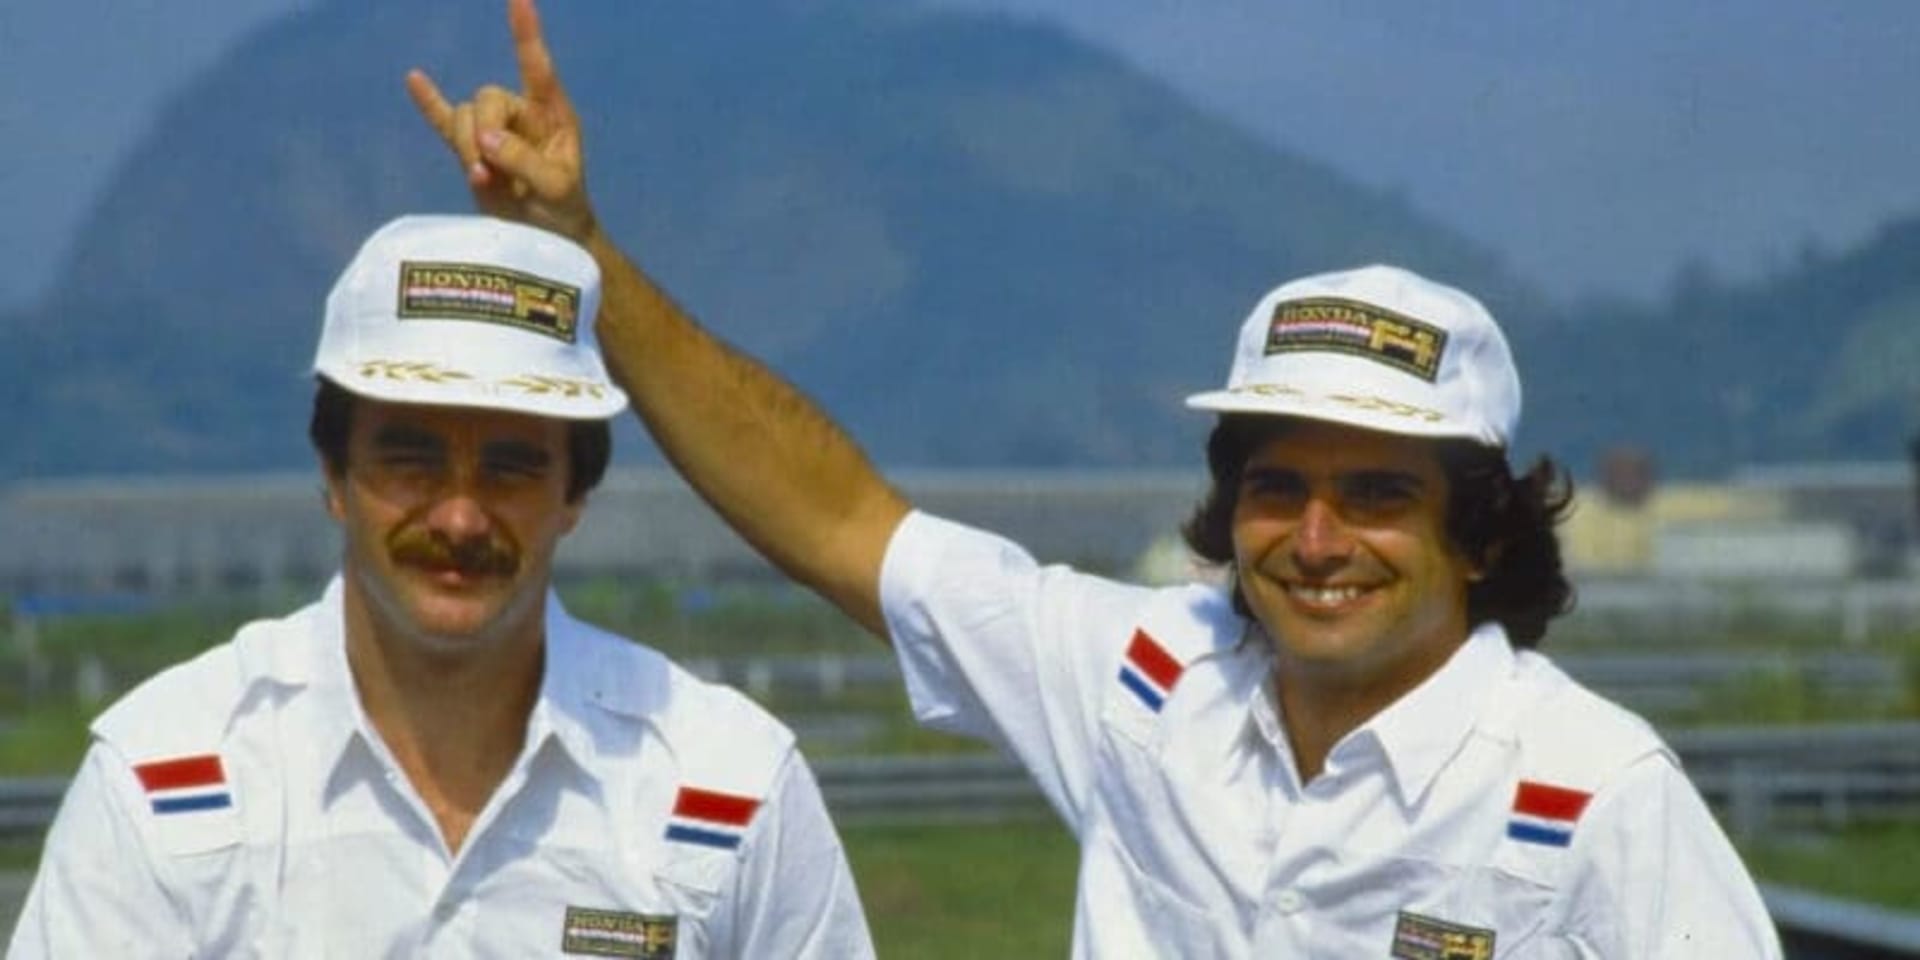 Na Nigelu Mansellovi (vlevo) také Piquet nenechával nit suchou a paroháč na fotce byl opravdu tím nejmenším hříchem.